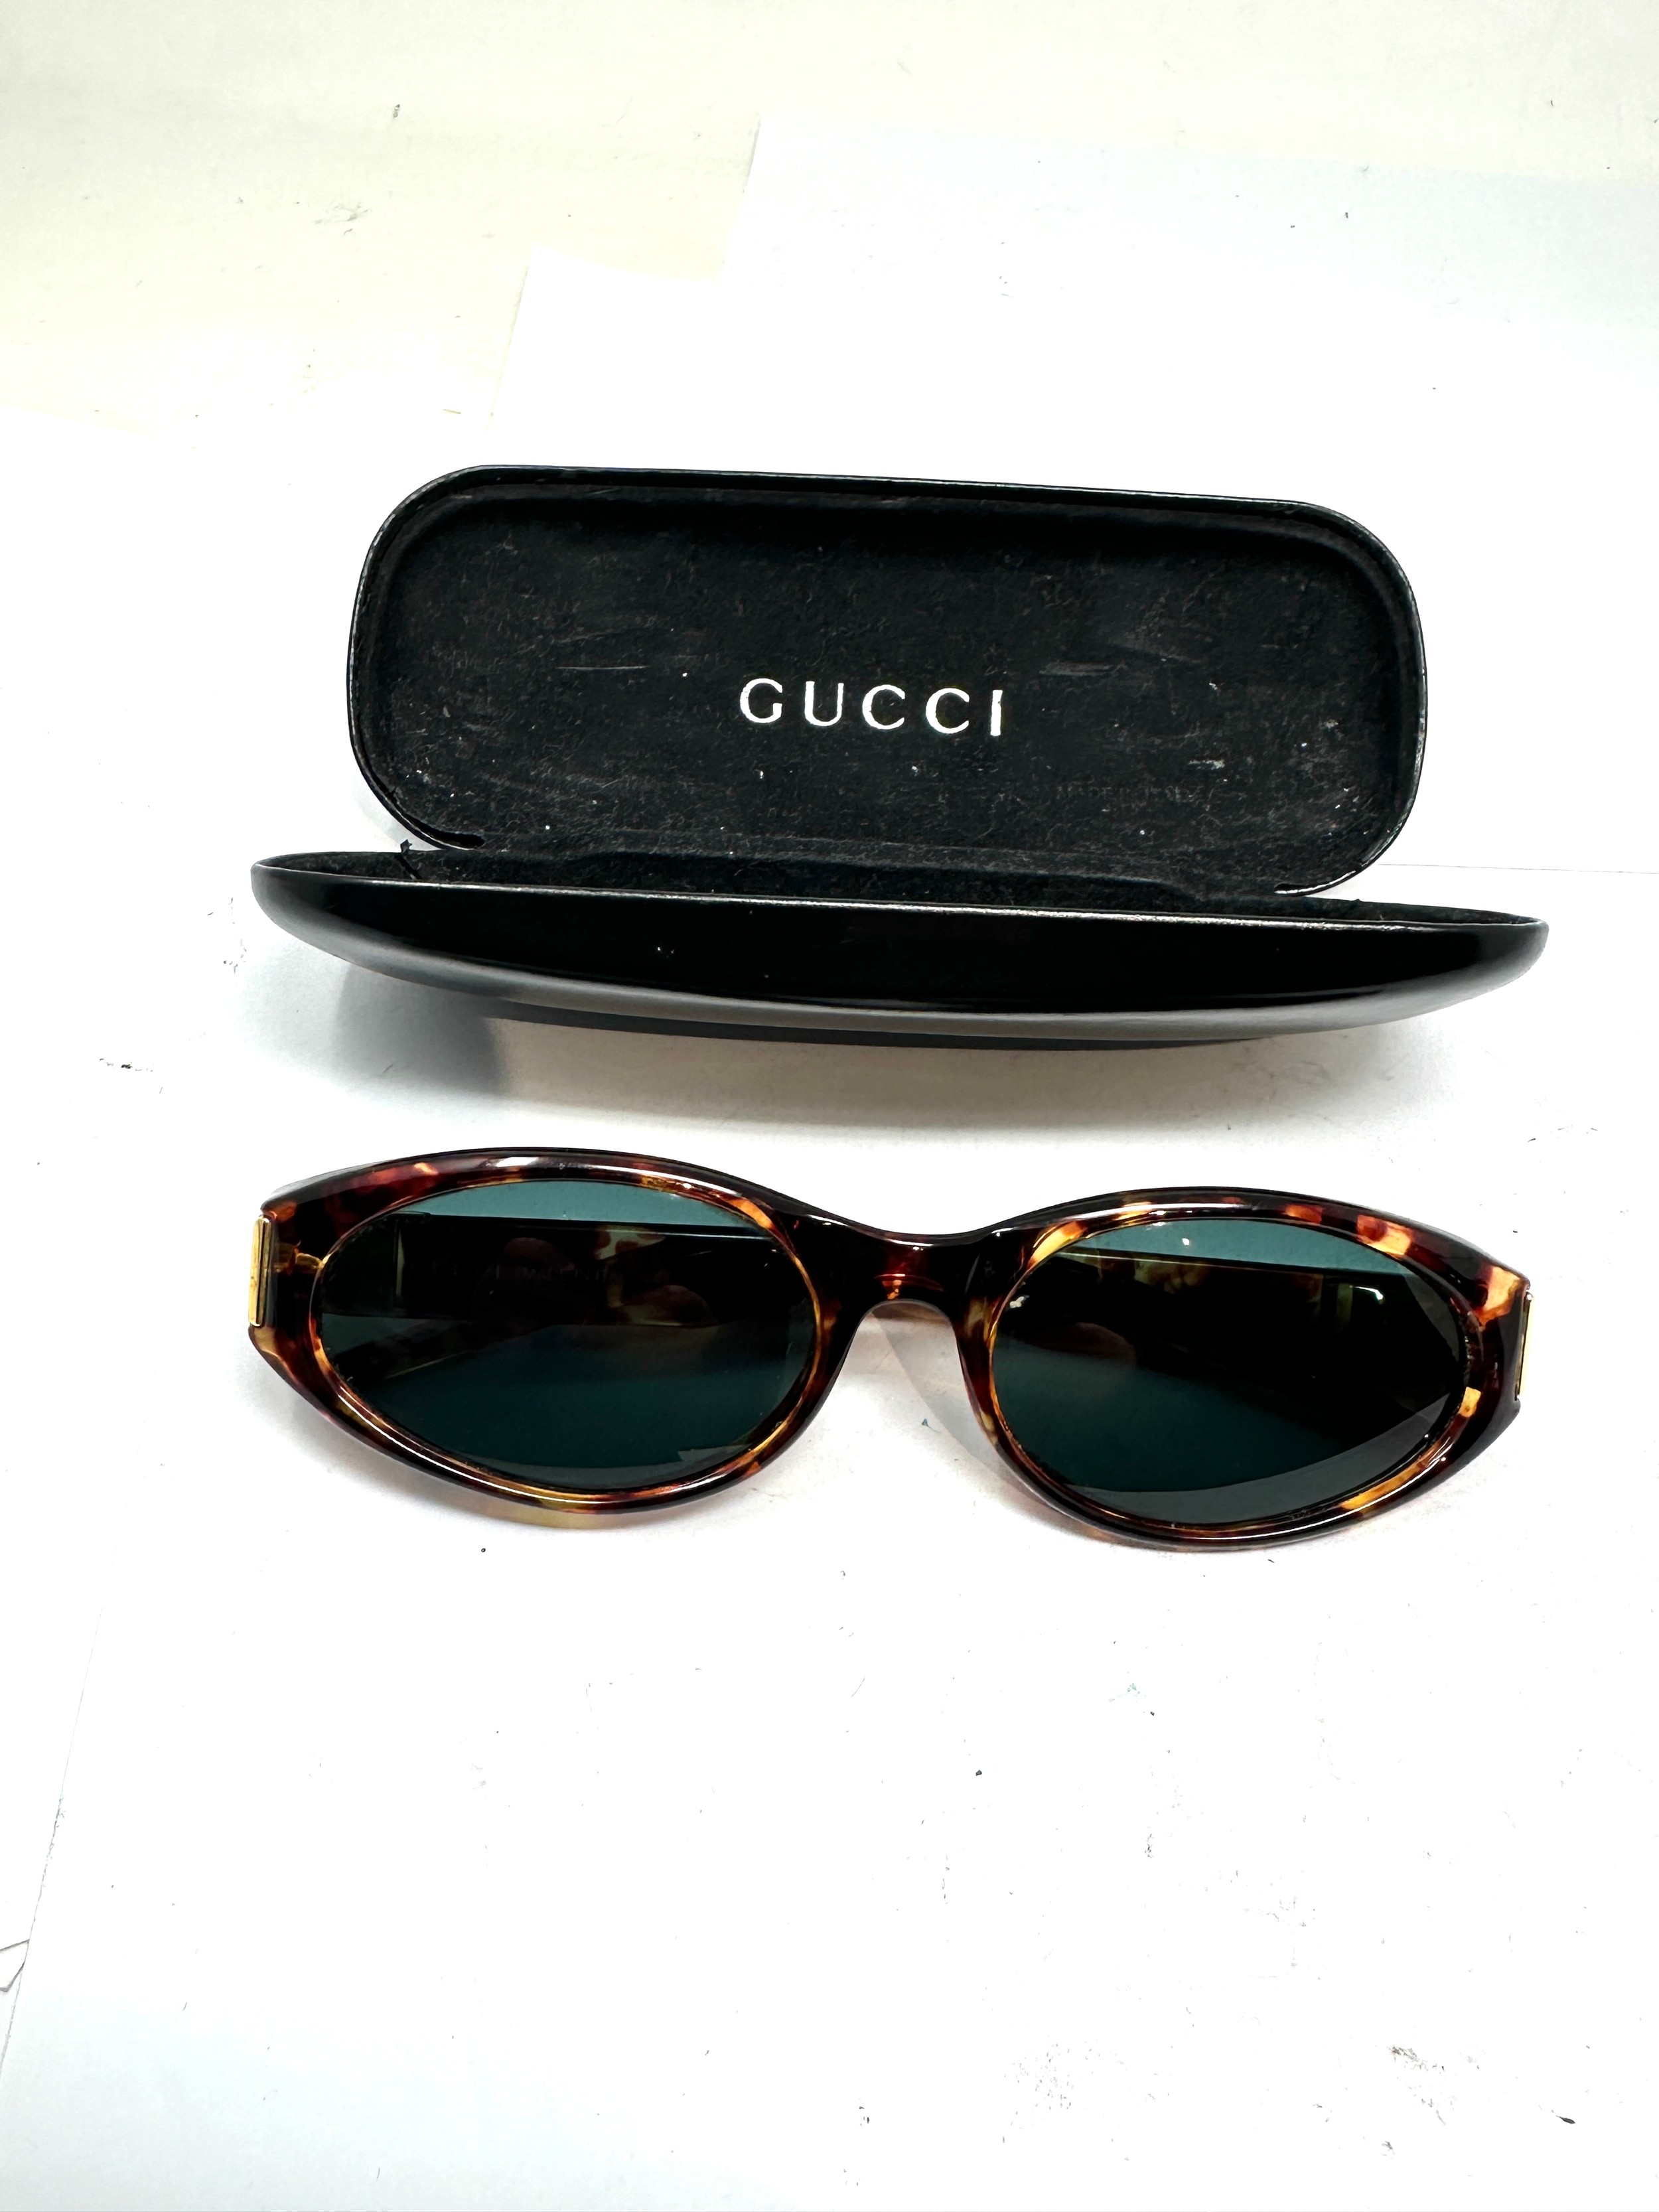 Designer Gucci Sunglasses In Case